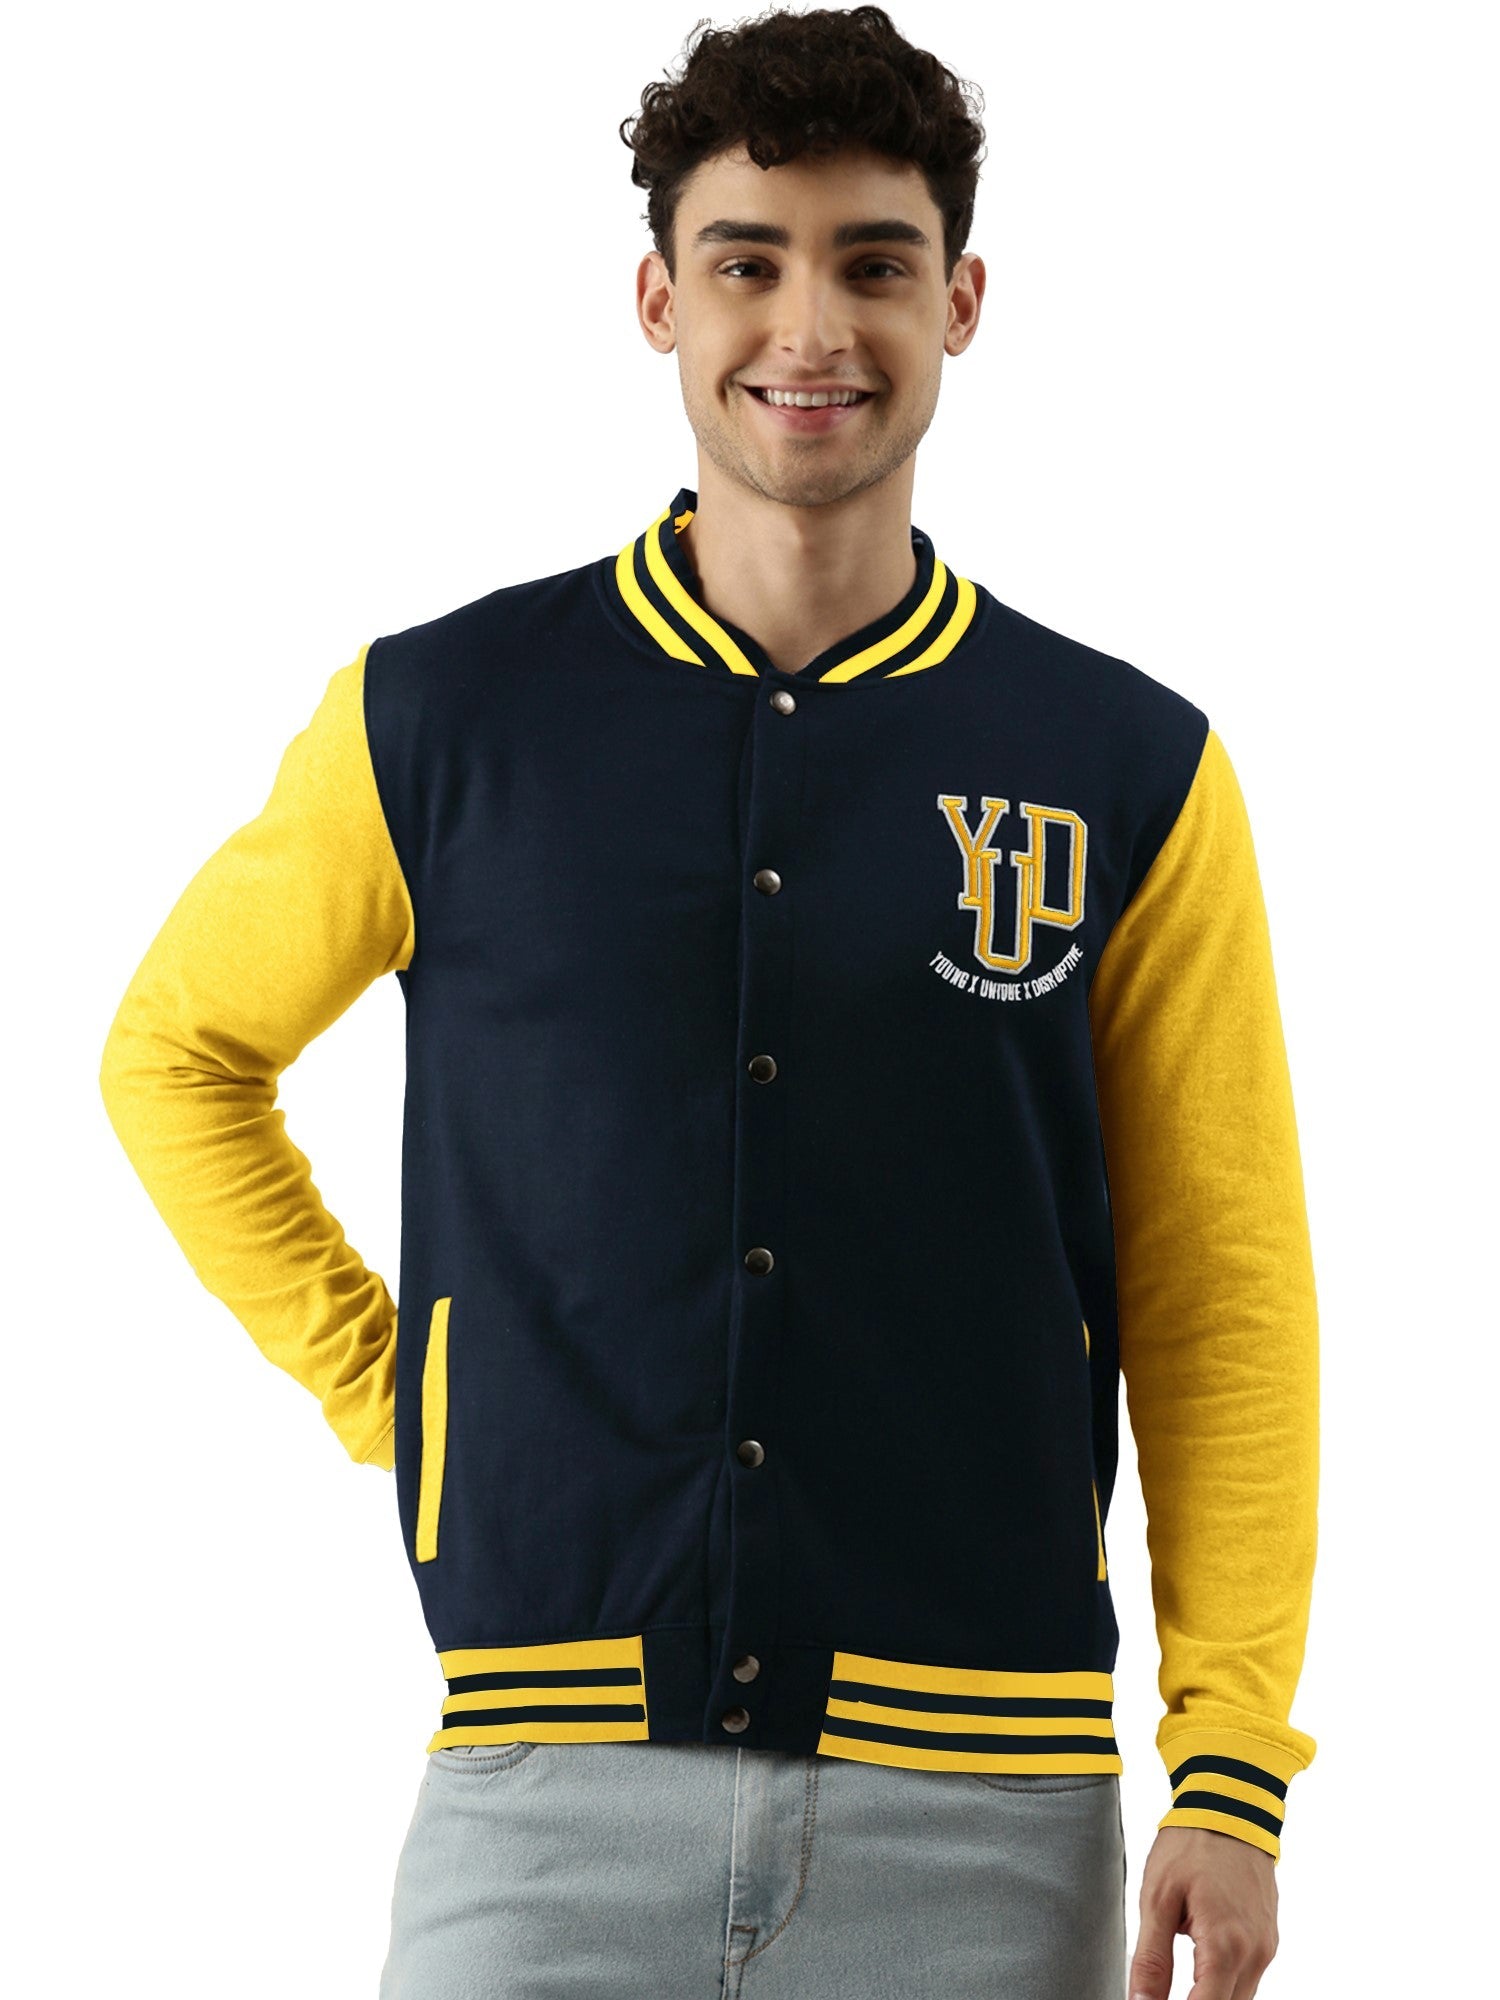 Buy Varsity Navy Yellow Jacketfrom Maniac Life store XL